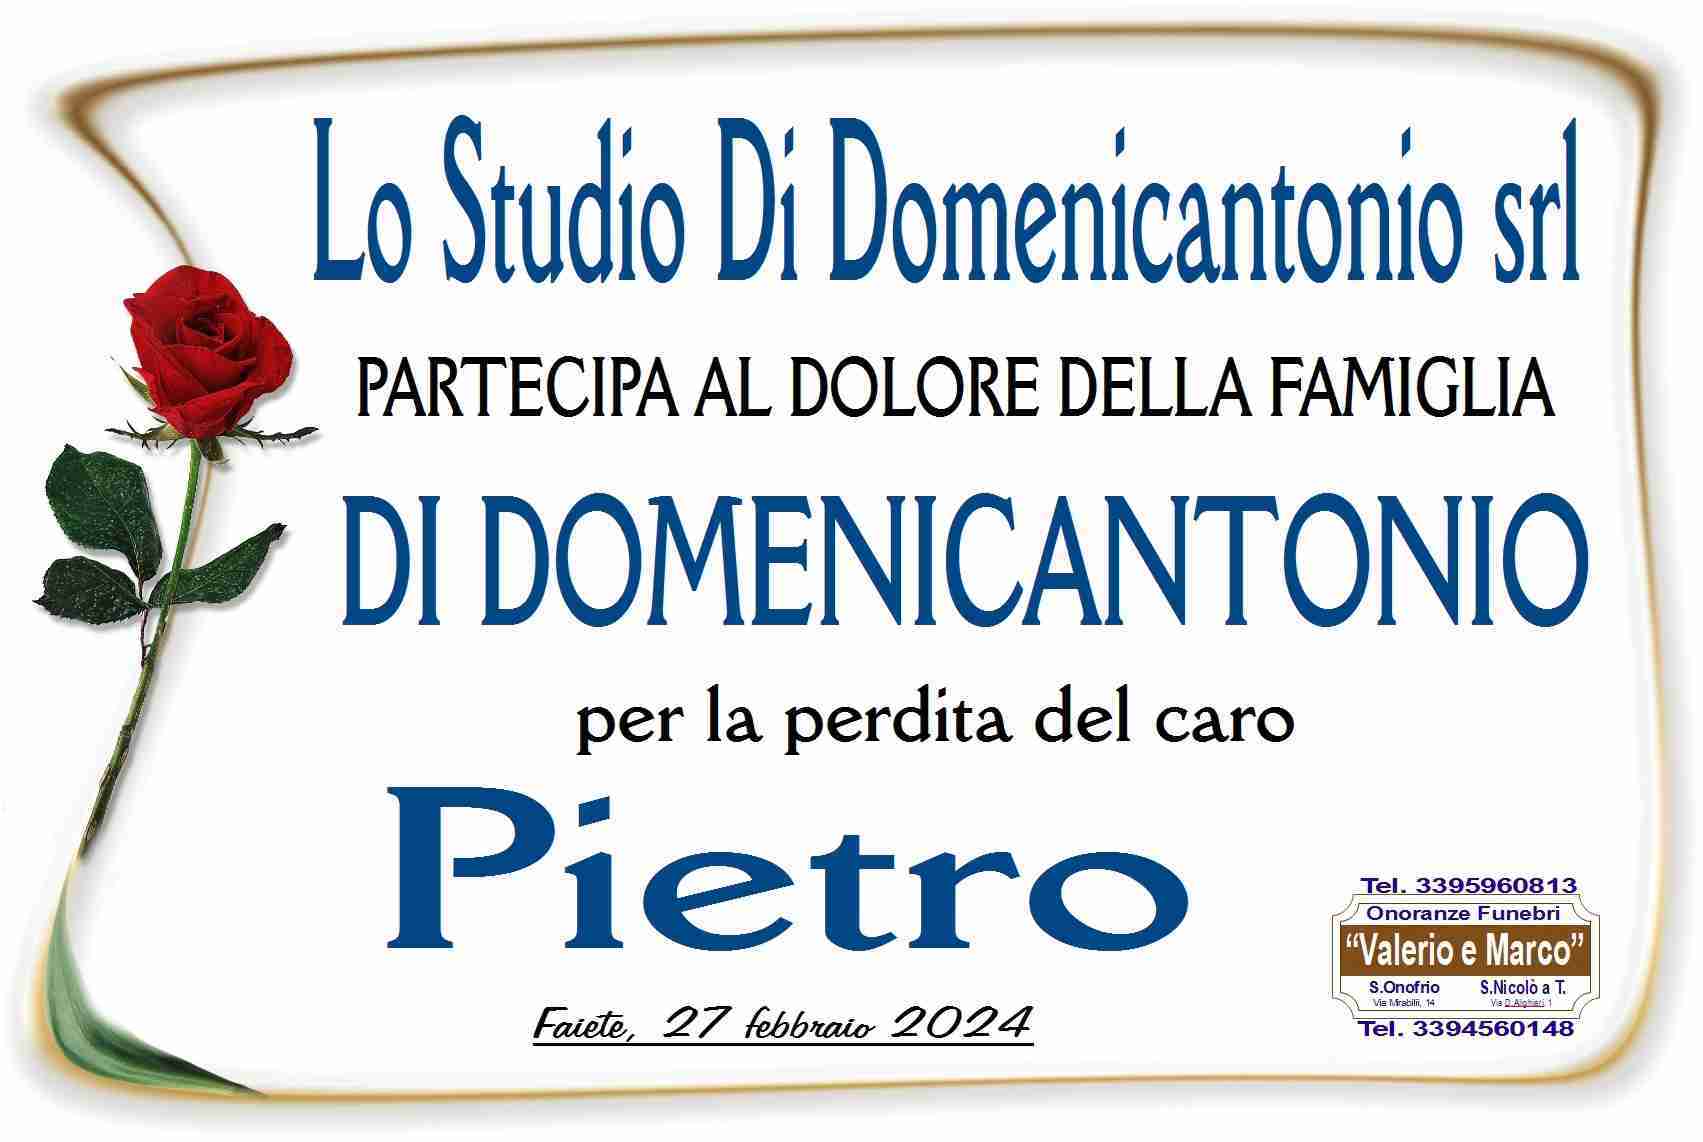 Pietro Di Domenicantonio